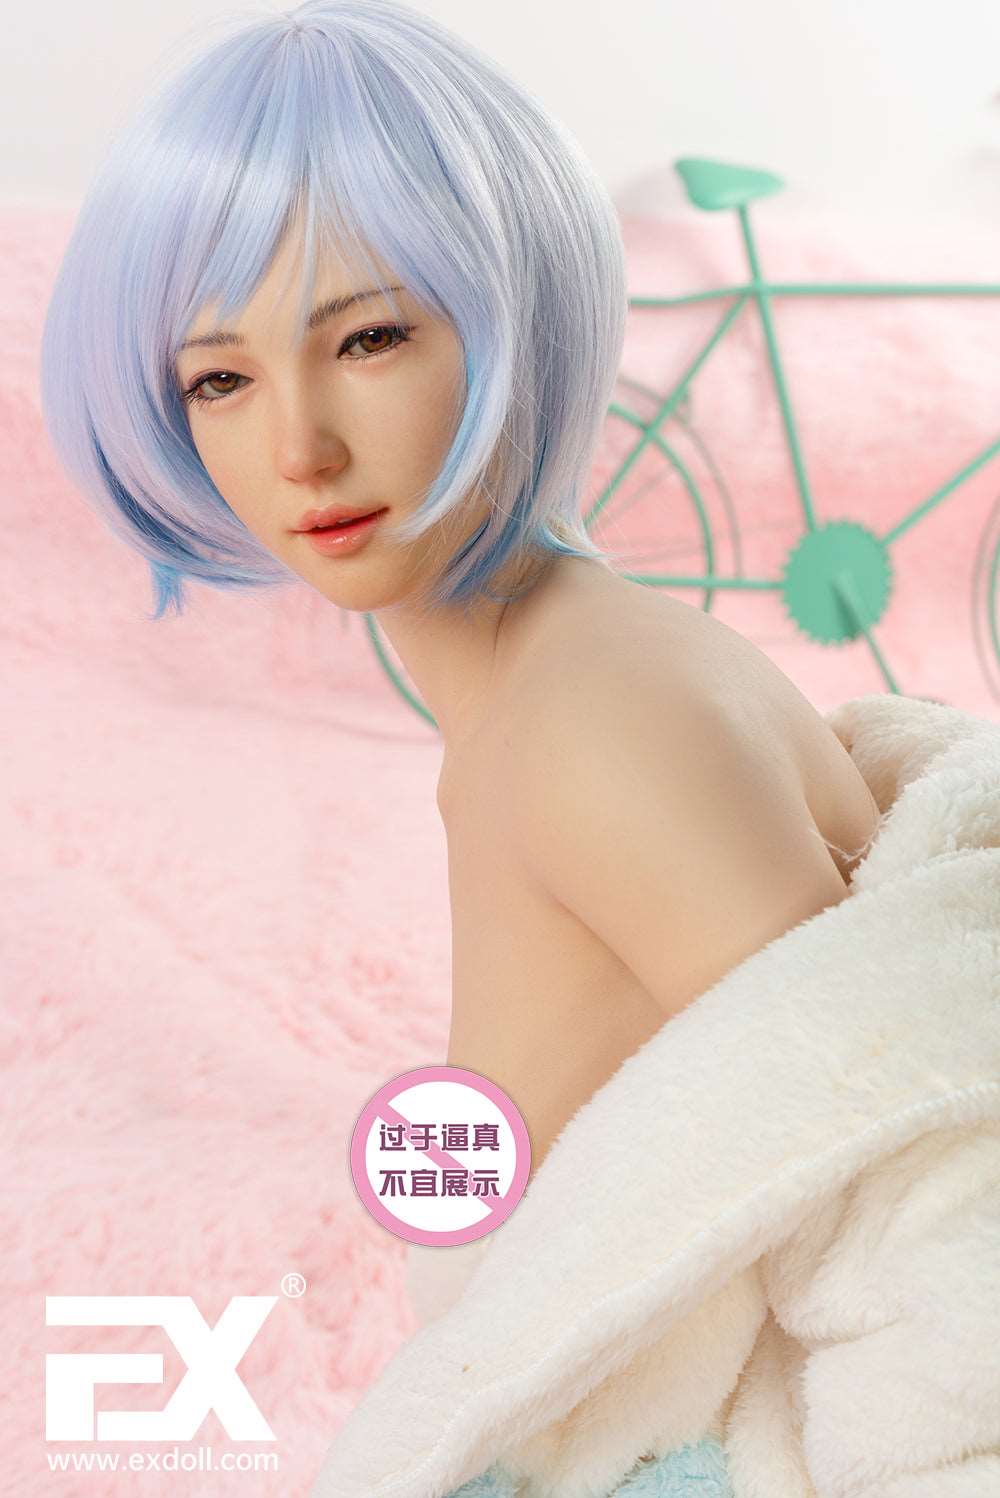 EX Doll Summit Series 152 cm Silicone - Jodie | Sex Dolls SG